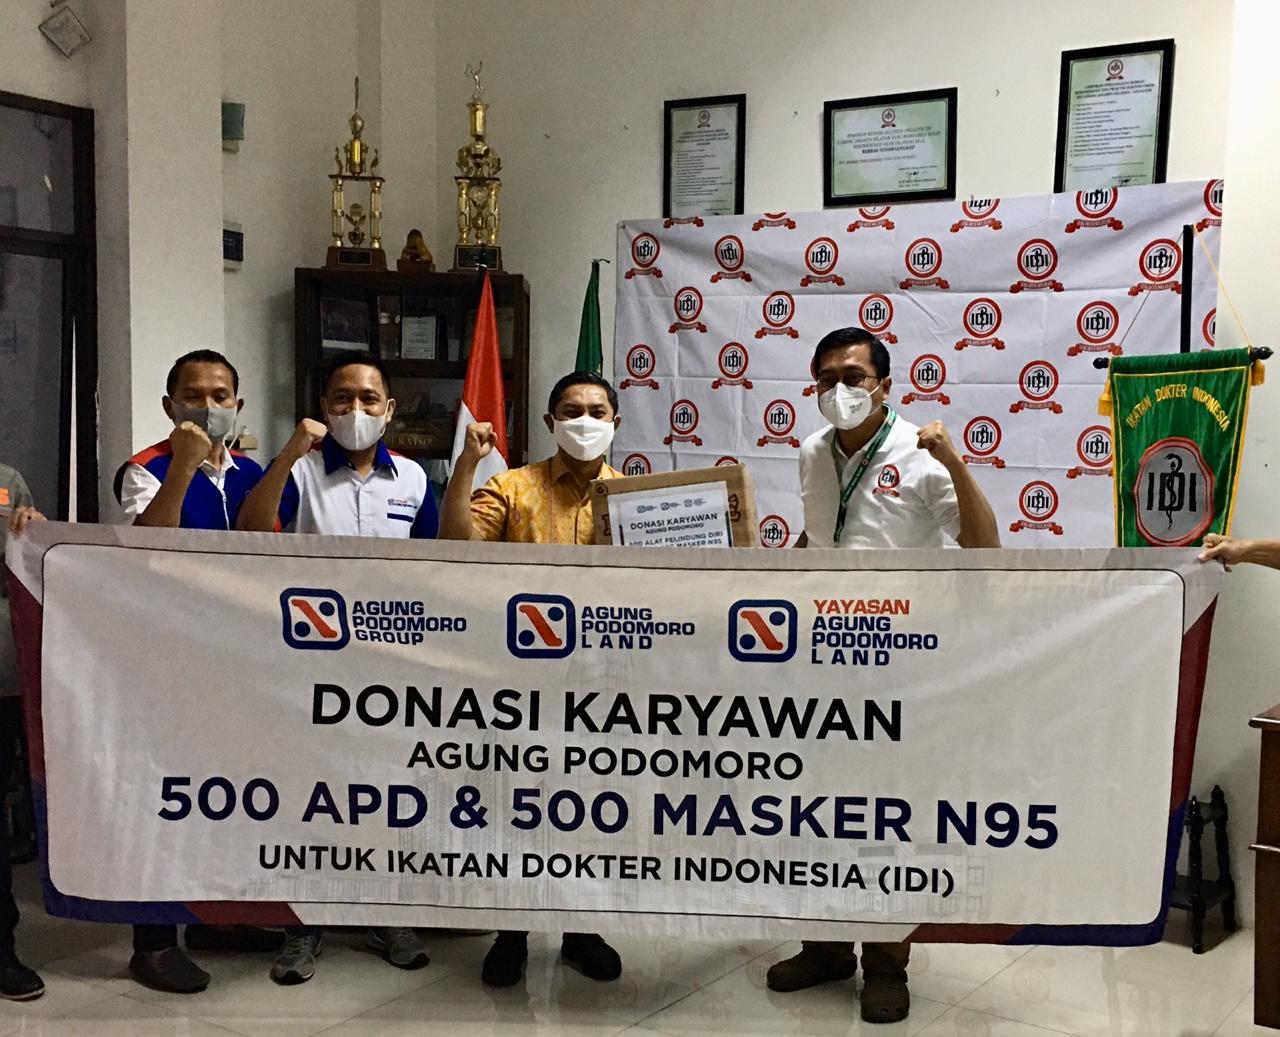 Yayasan Agung Podomoro Land memberikan bantuan berupa alat pelindung diri (APD) dan masker kepada Ikatan Dokter Indonesia (IDI).